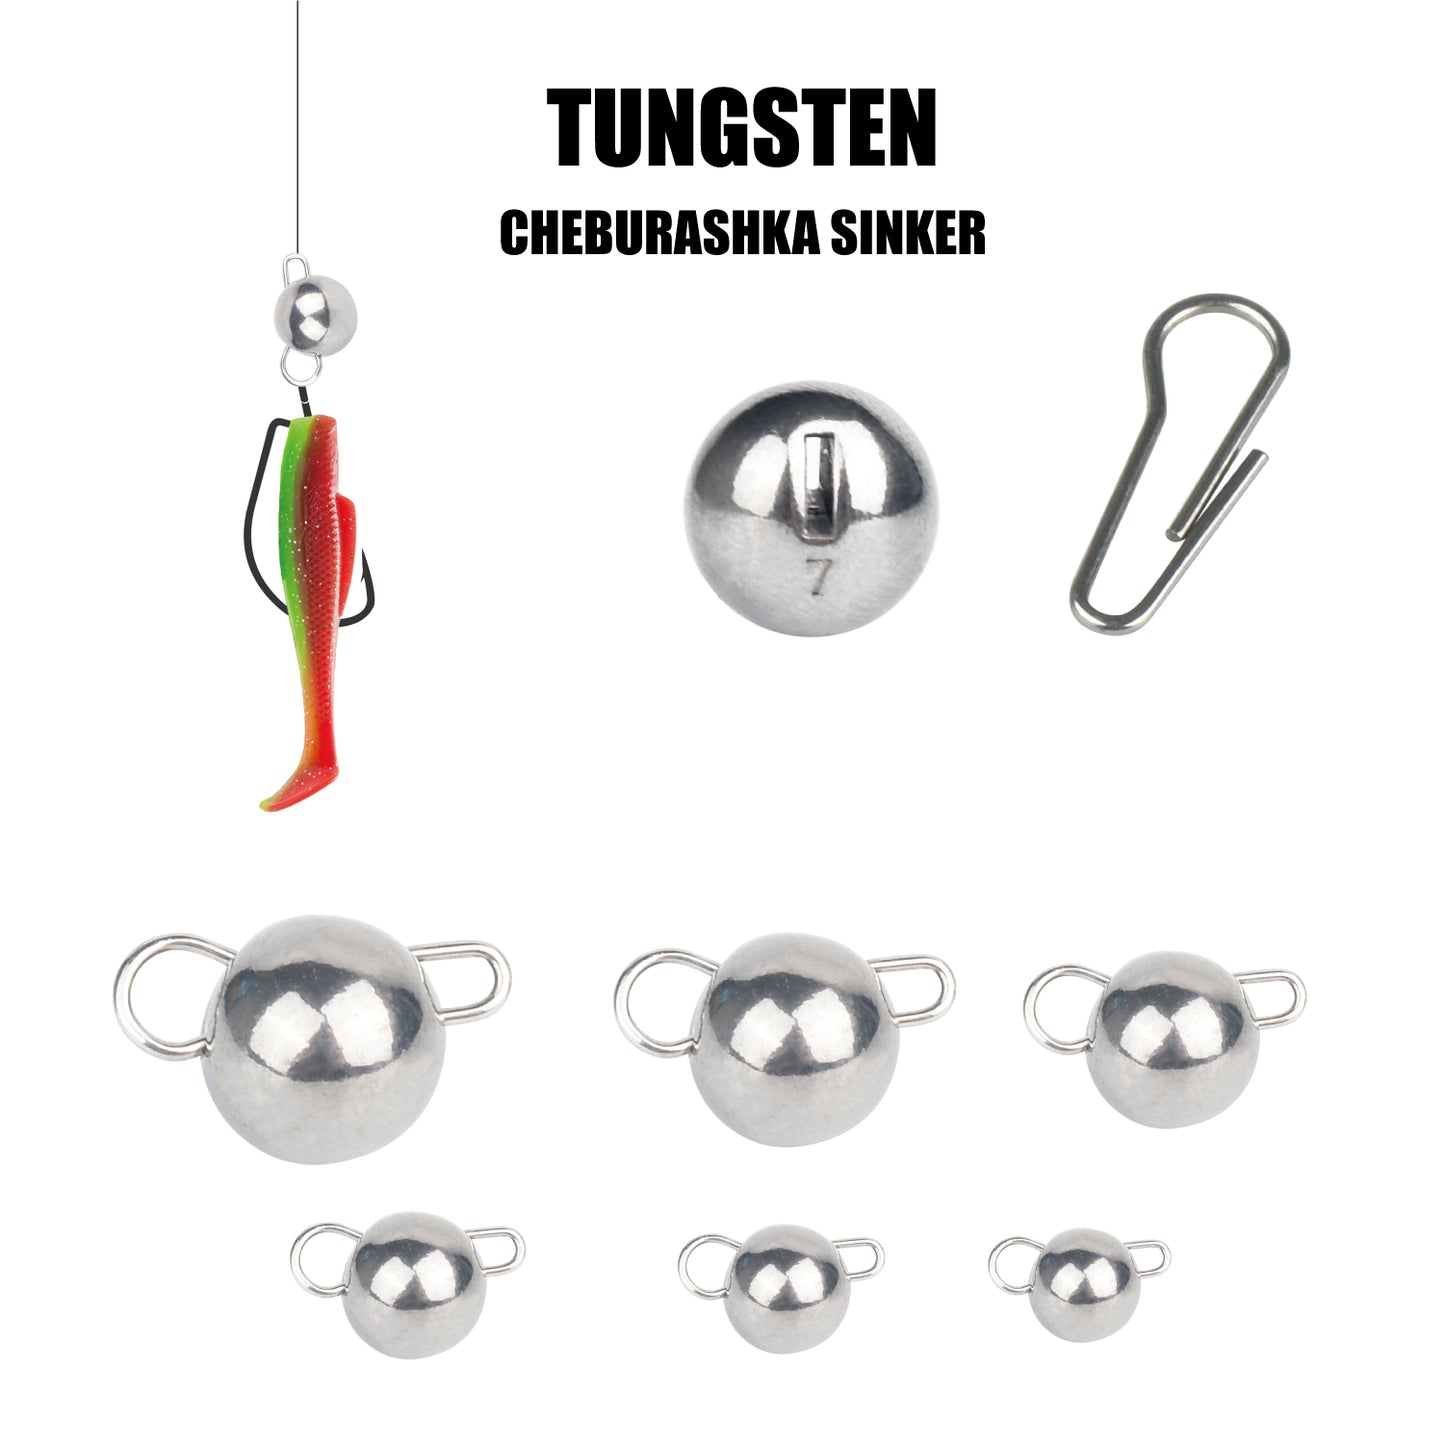 MUUNN 10PCS Tungsten Cheburashka Sinker,Fishing Weight,1G/1.5G/2G